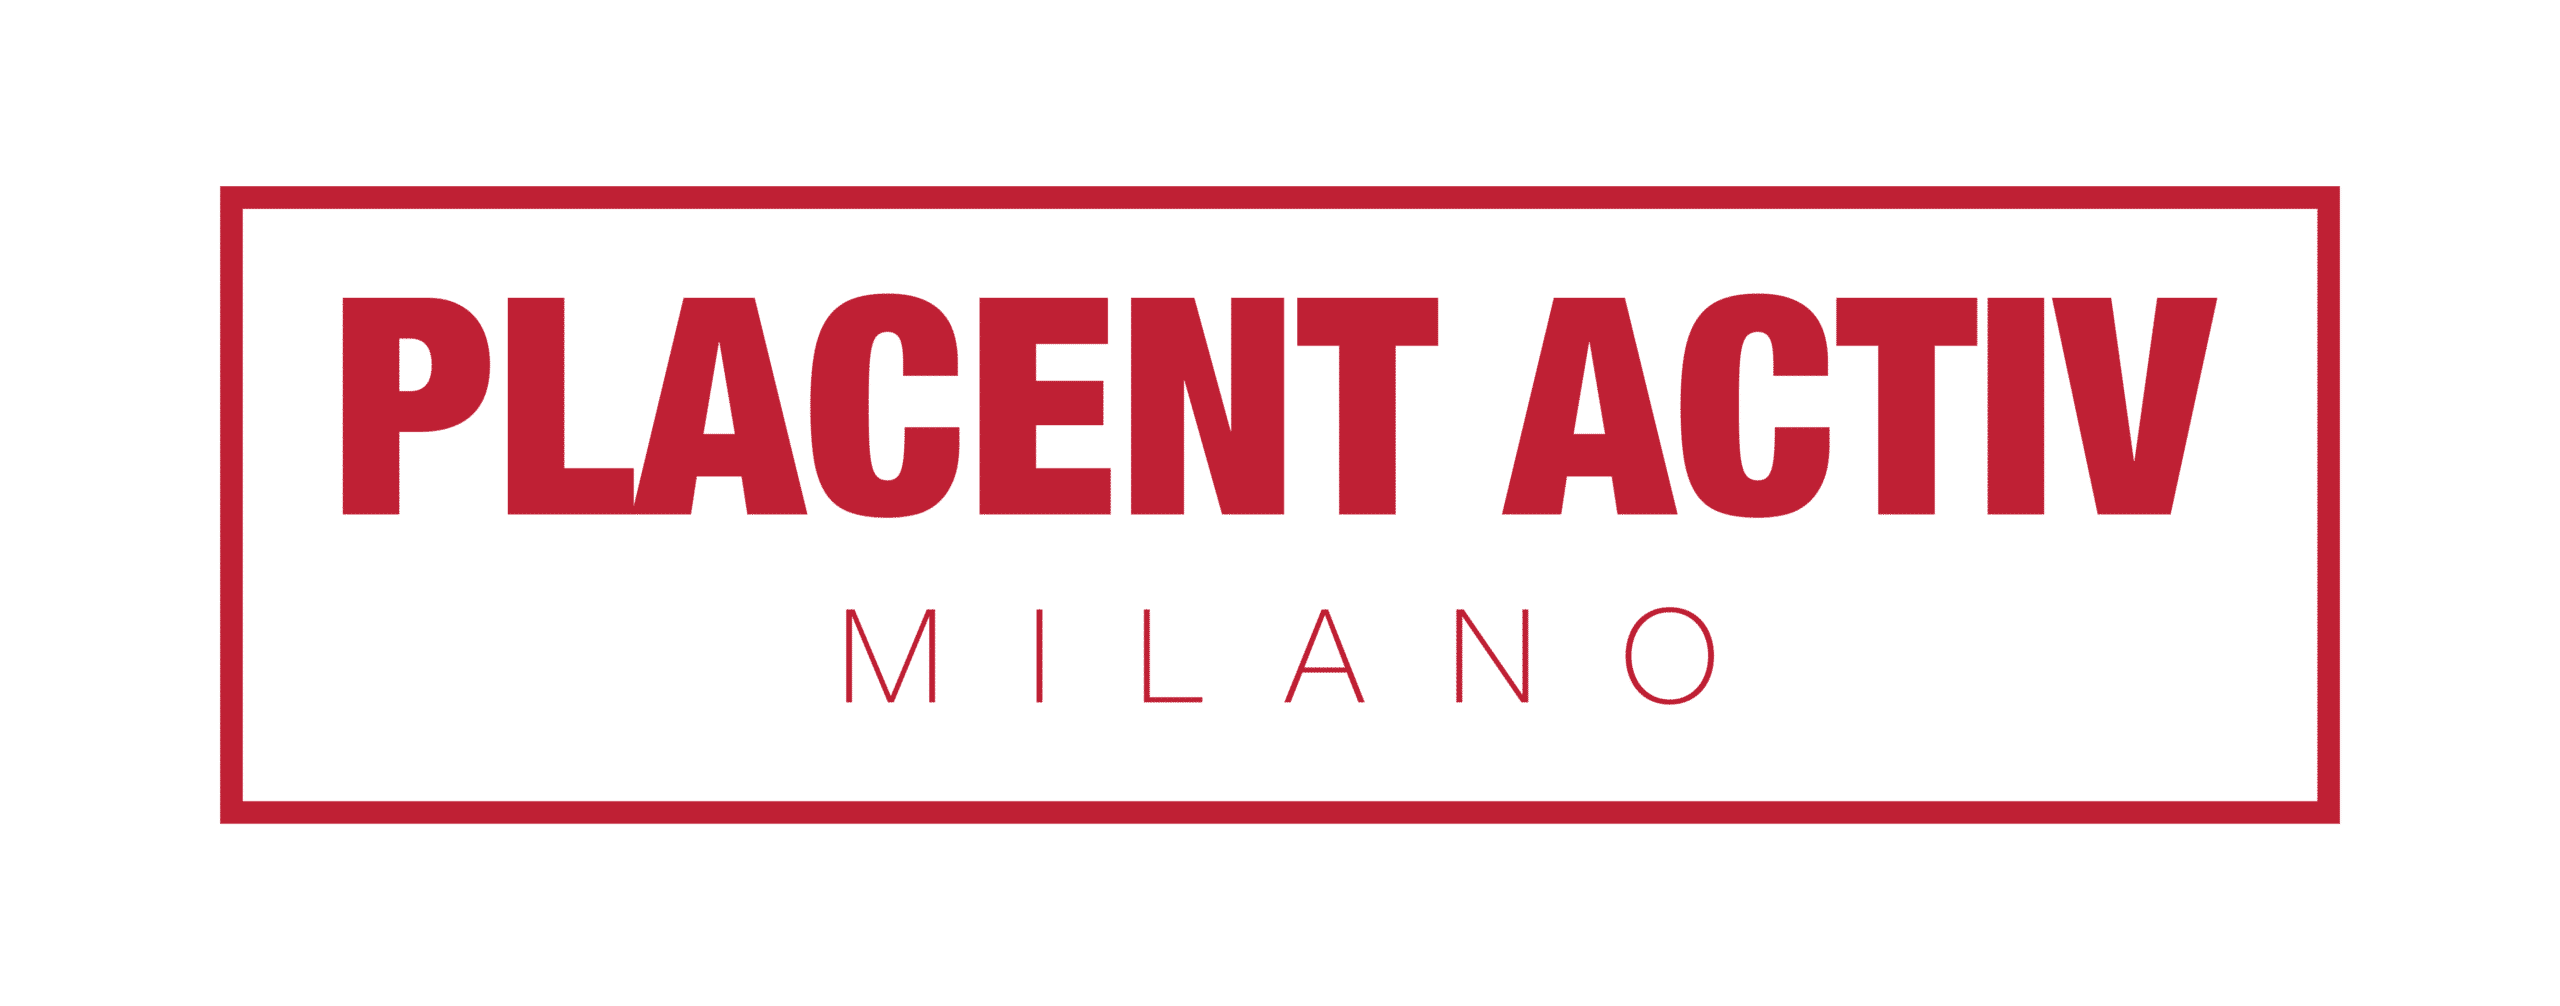 Placent Activ logo